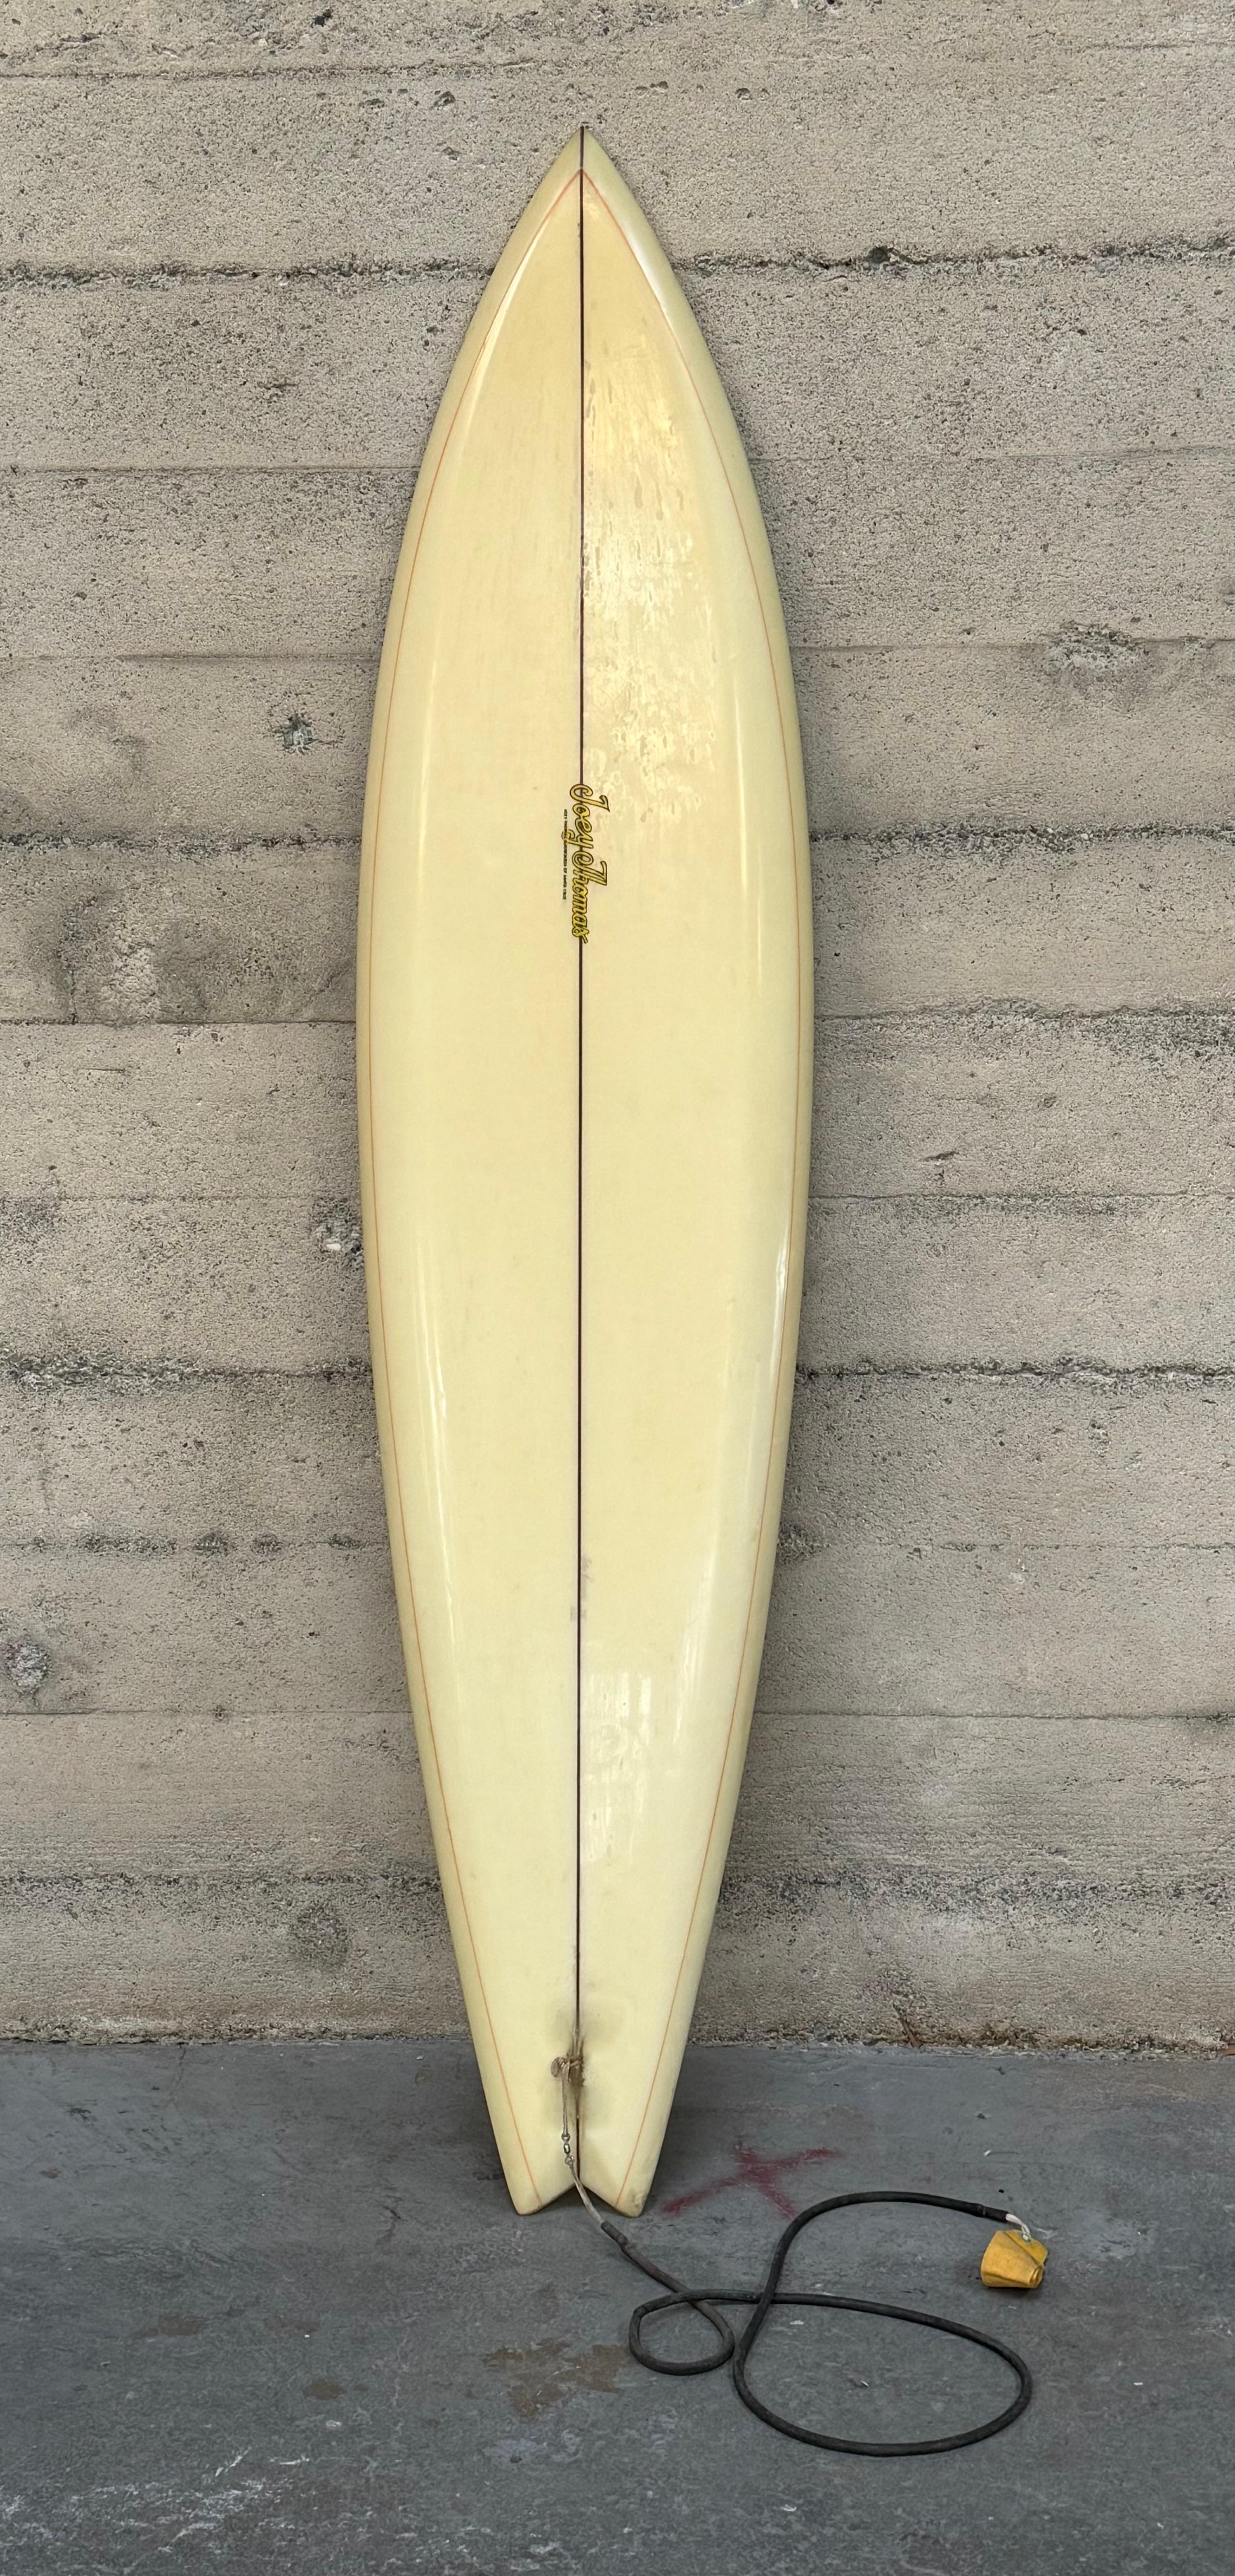 Planche de surf des années 1970 par le shaper / surfeur de Santa Cruz Joey Thomas, cet exemple a un aileron en bois simple, un swallow tail, un beak nose, un down rail avec une ligne de résine le long des rails. C'était une forme populaire